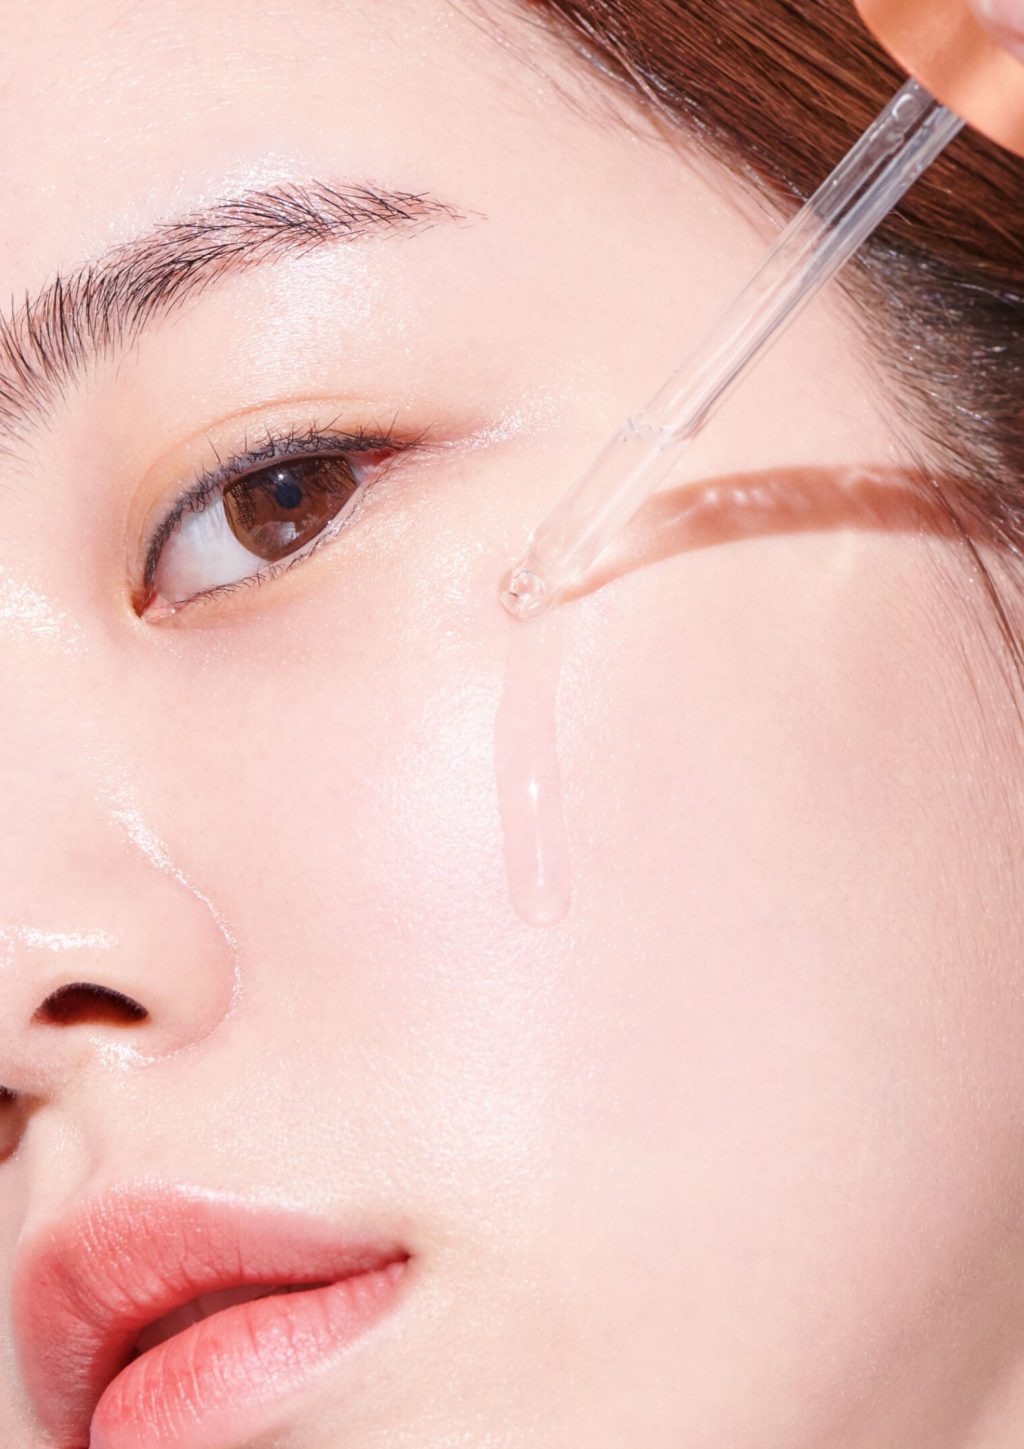 Quy trình chăm sóc da gây dựng nên thương hiệu 'đẹp bất chấp' của phụ nữ Hàn Quốc 3